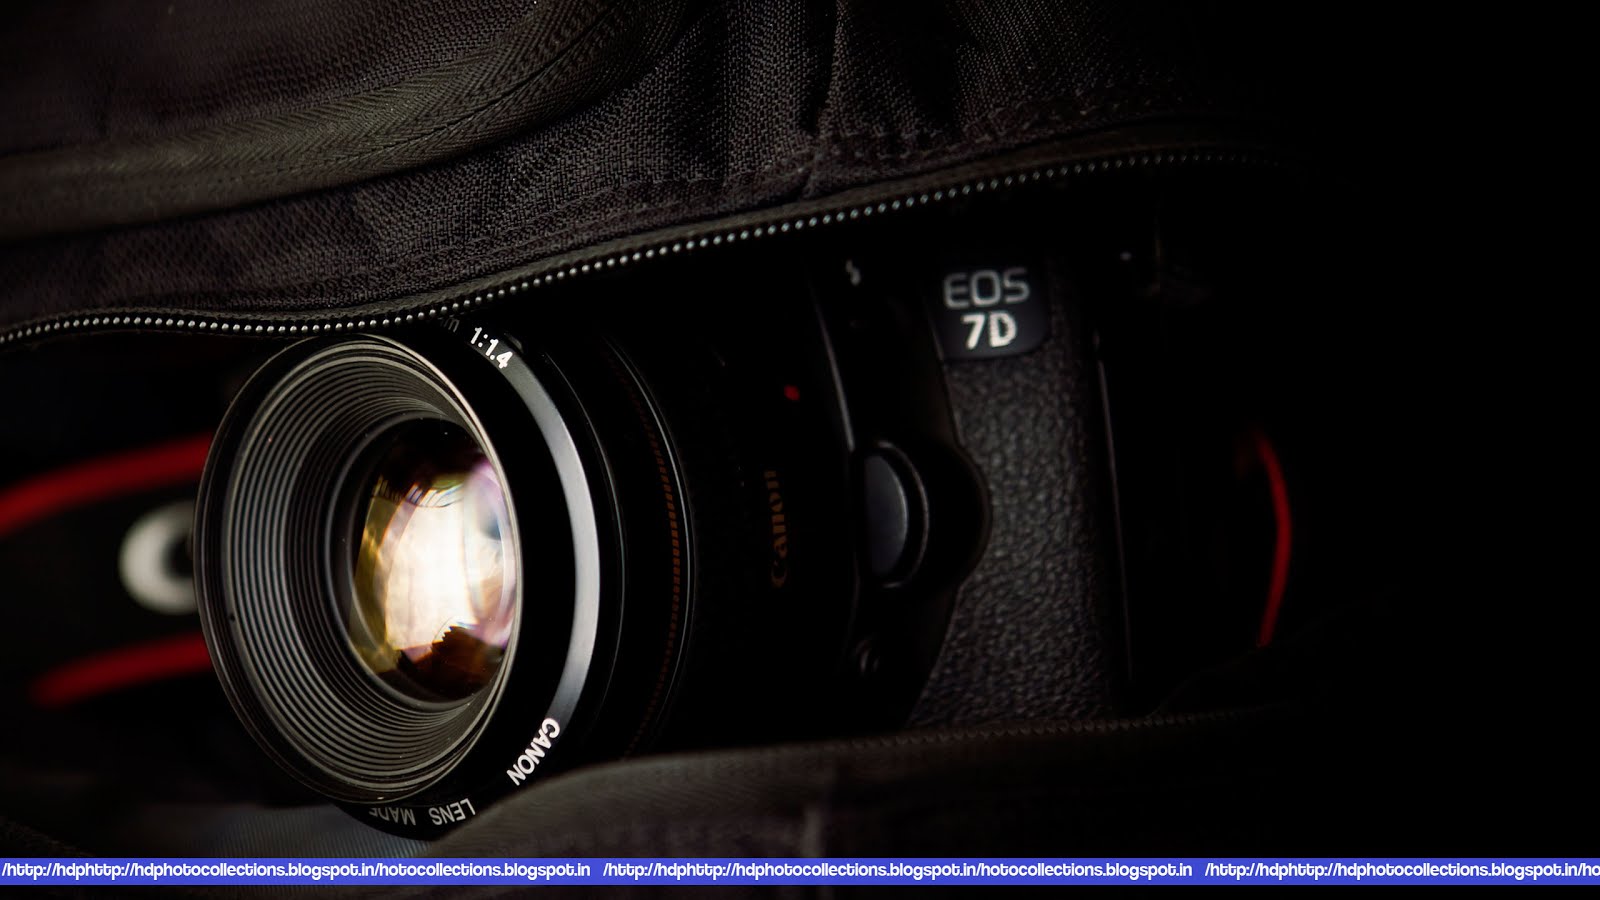 Canon Camera Photography Wallpaper - Camera Cover Photos For Facebook - HD Wallpaper 